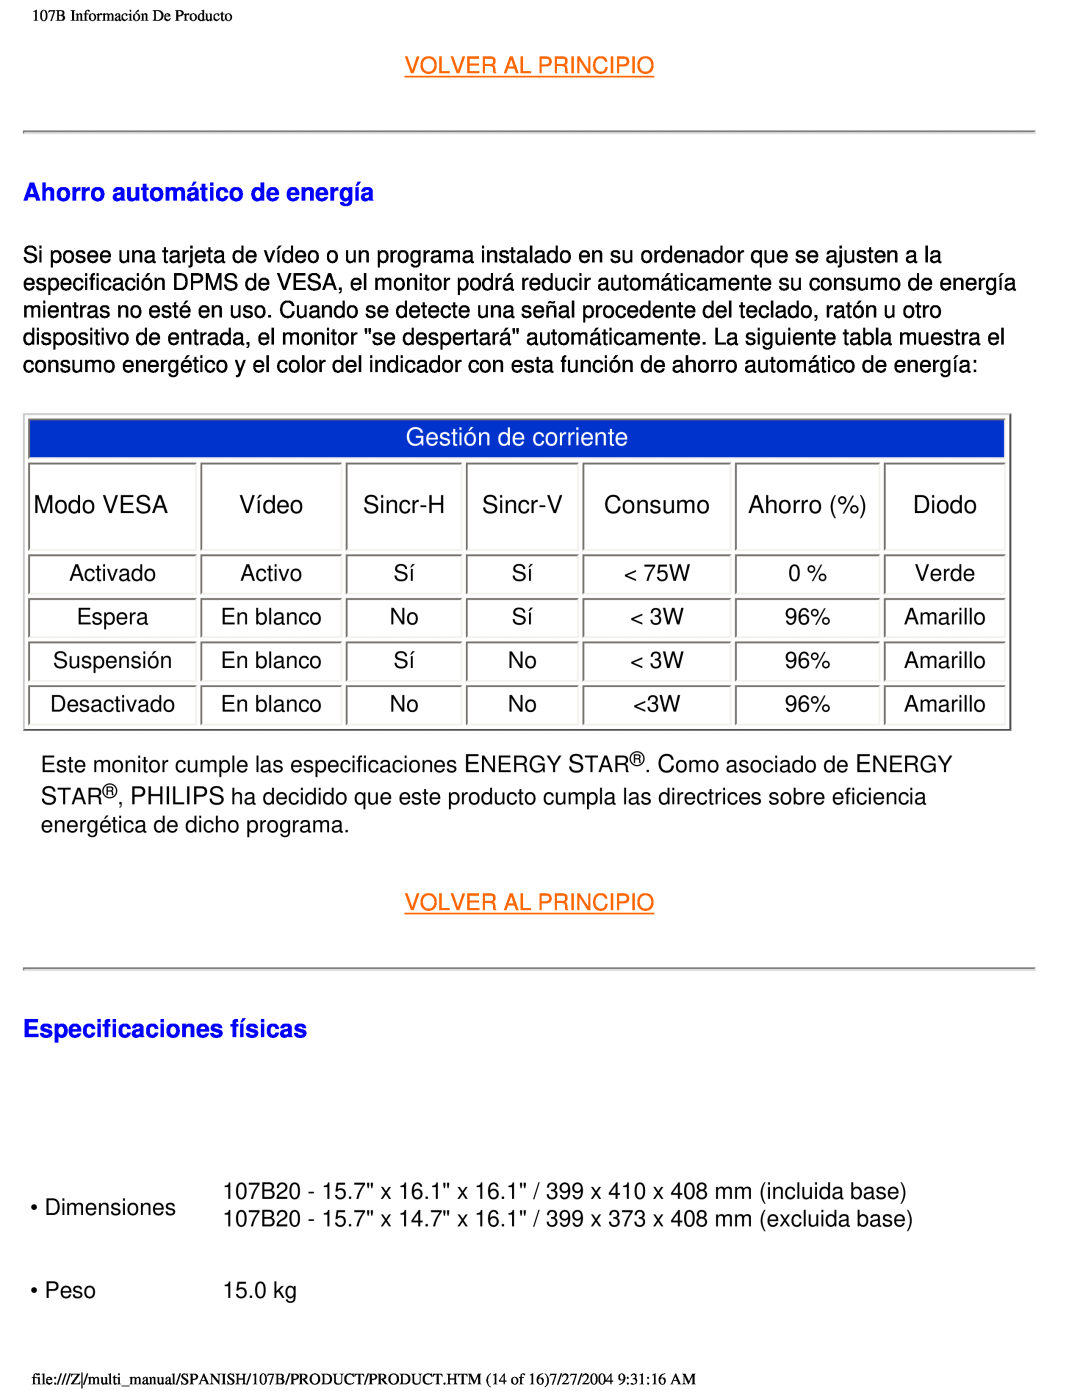 Philips 107B user manual Ahorro automático de energía, Gestión de corriente, Modo VESA, Sincr-H, Consumo, Ahorro % 